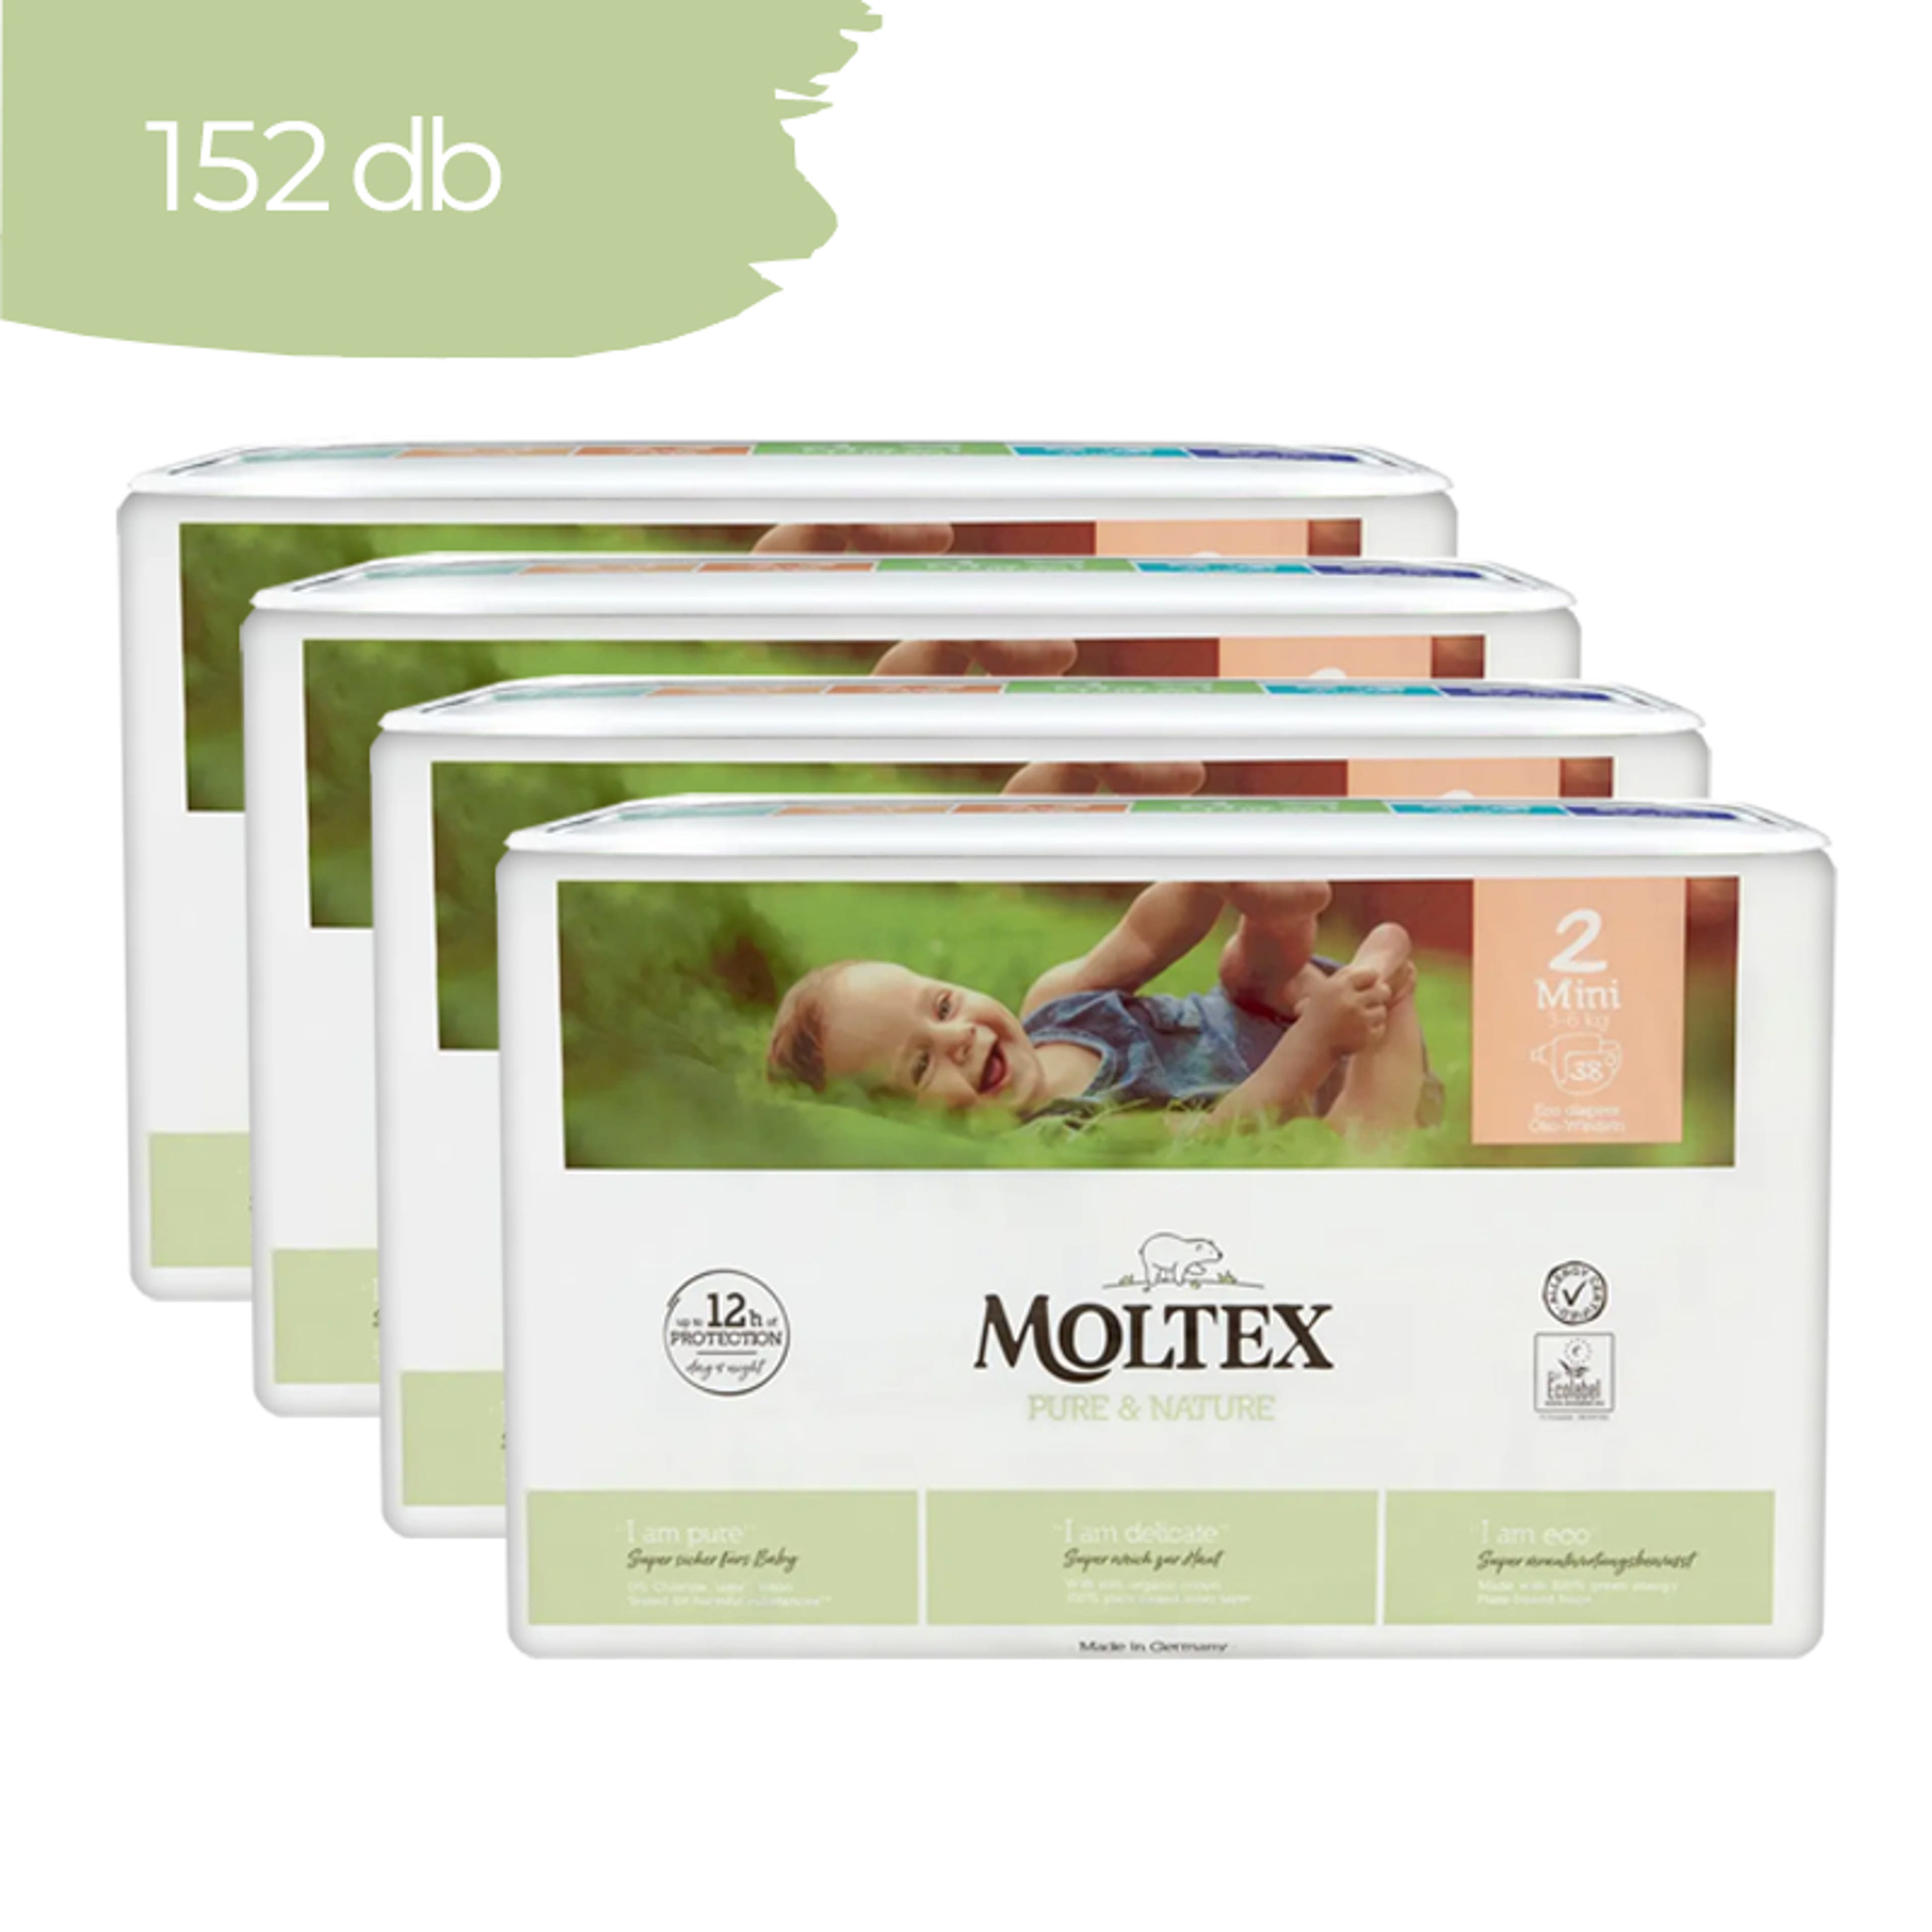 Moltex Pure & Nature Mini öko pelenka 3-6 kg - 152 kg